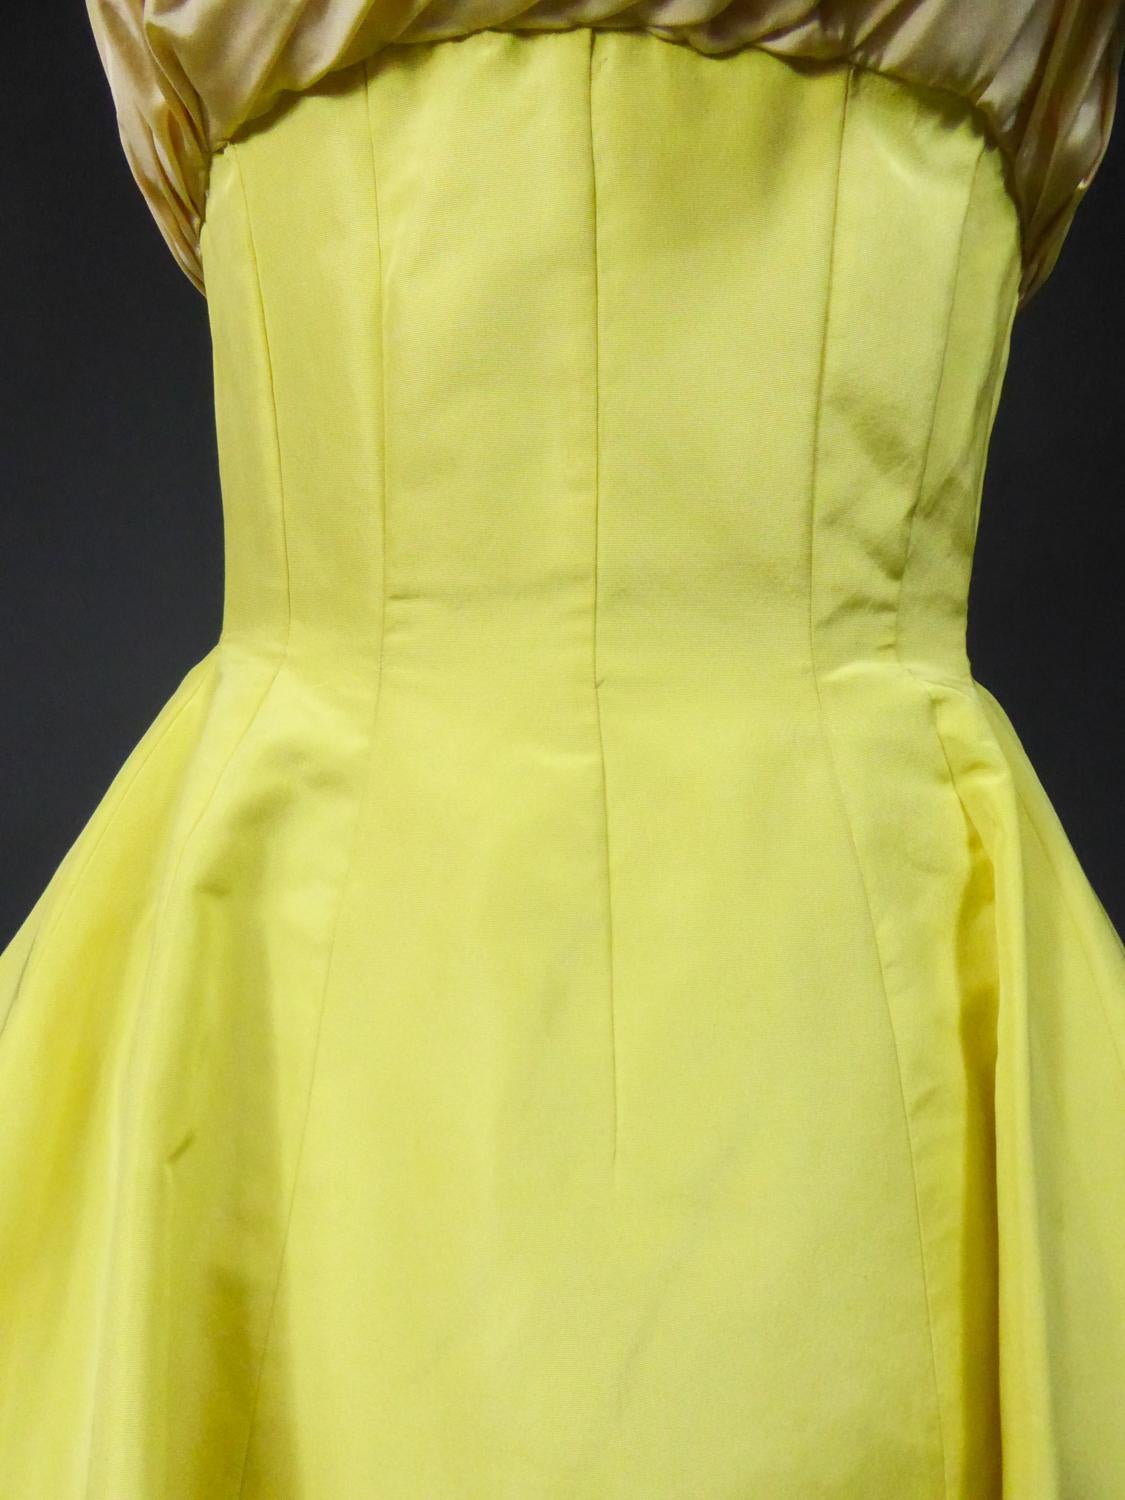 A Pierre Balmain Ottoman Silk Faille Couture Ball-Gown N° 83213 Paris Circa 1958 For Sale 4